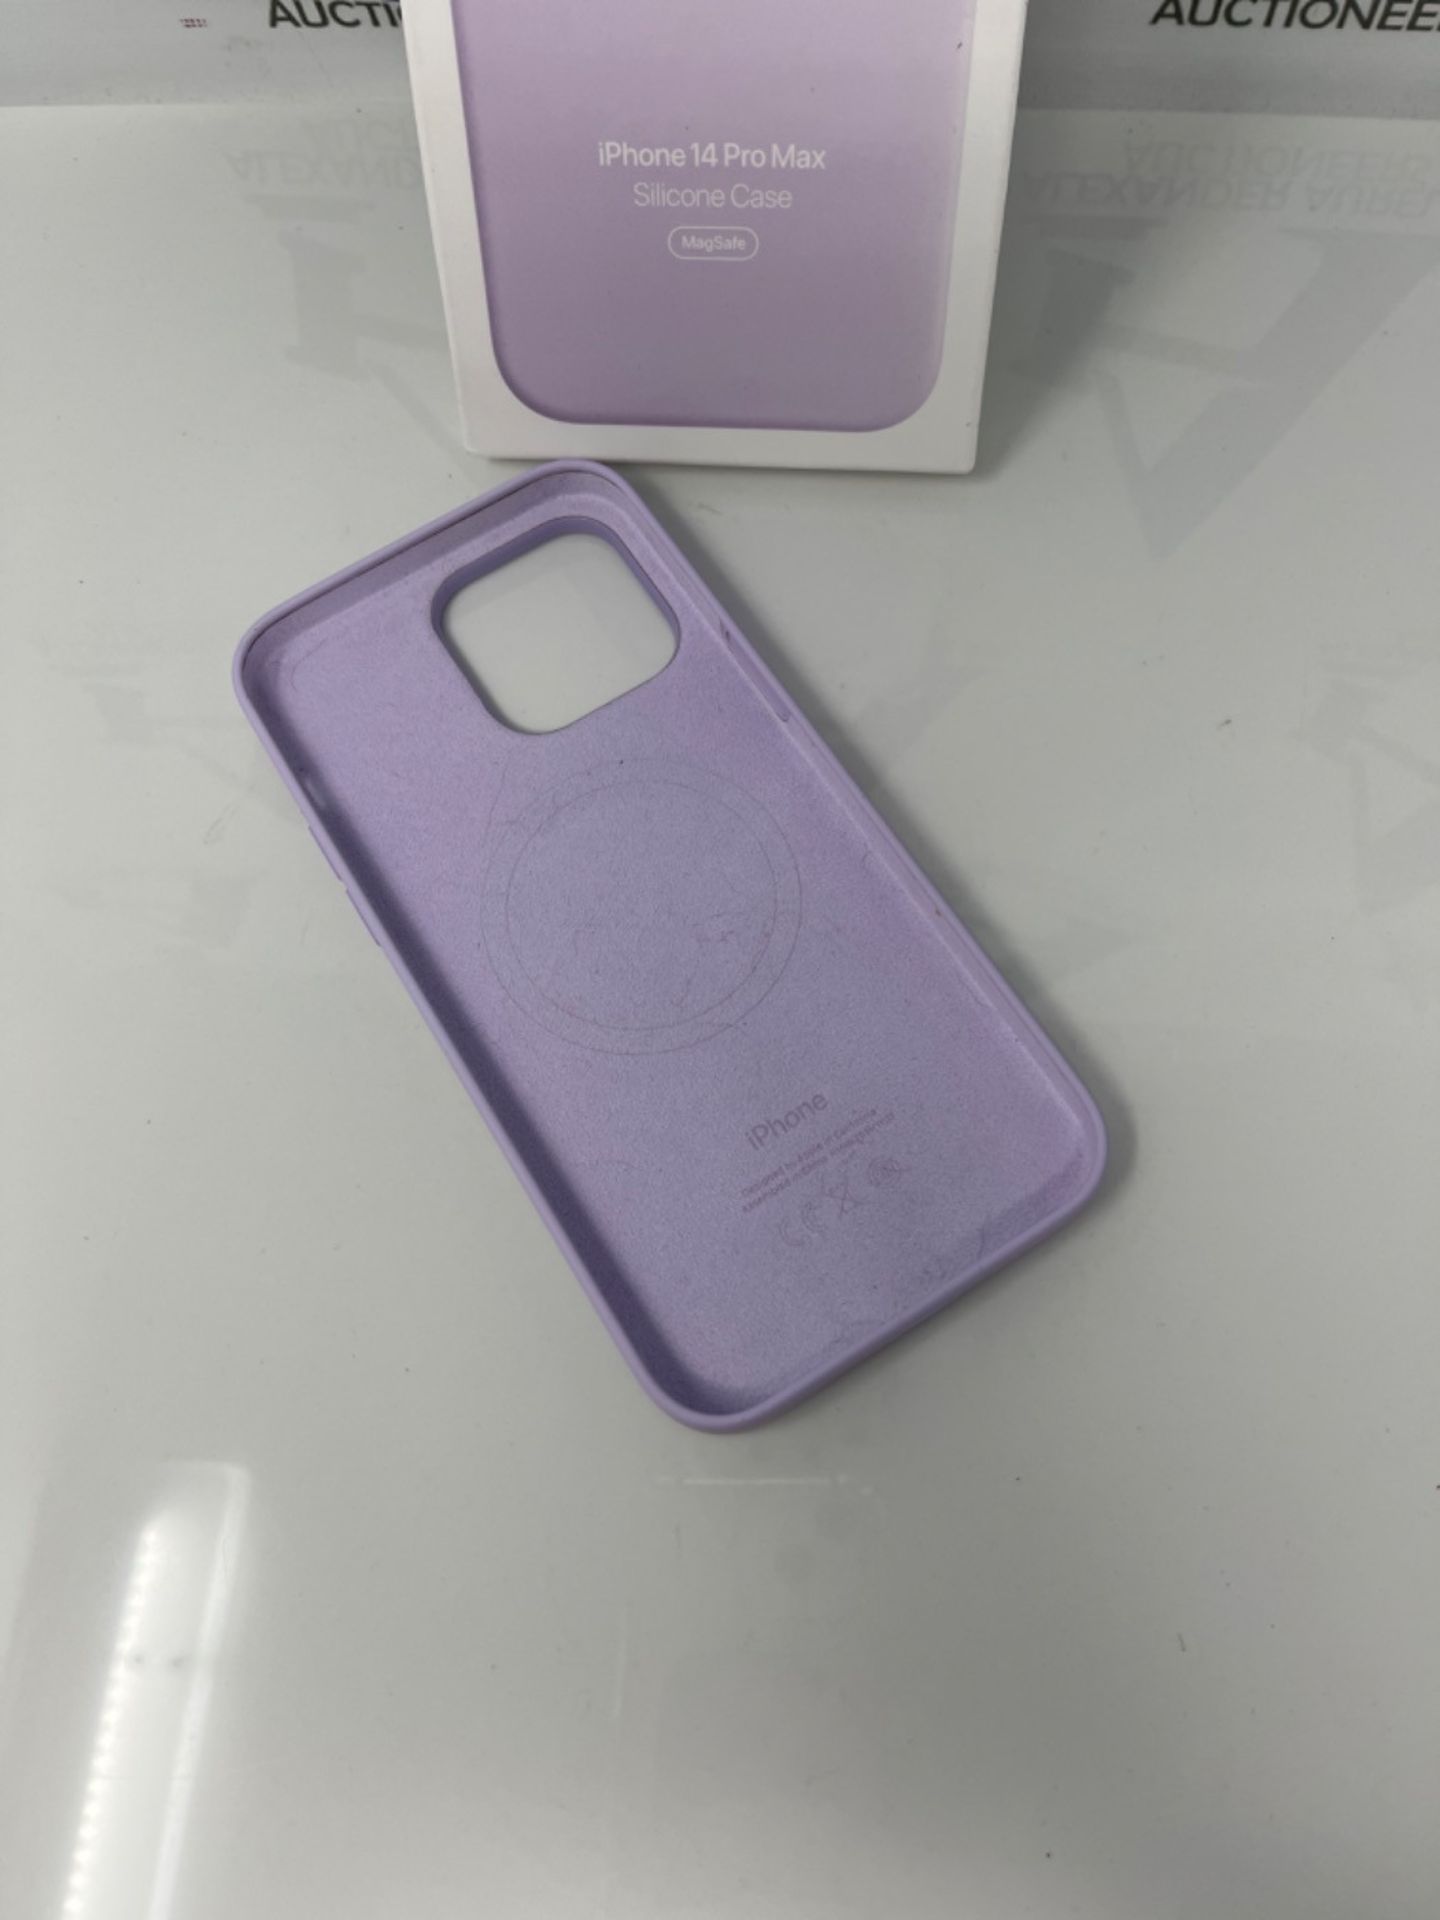 Apple iPhone 14 Pro Max Silicone Case with MagSafe - Lilac â¬ 9 â¬ 9 â¬ 9 â? - Bild 3 aus 3